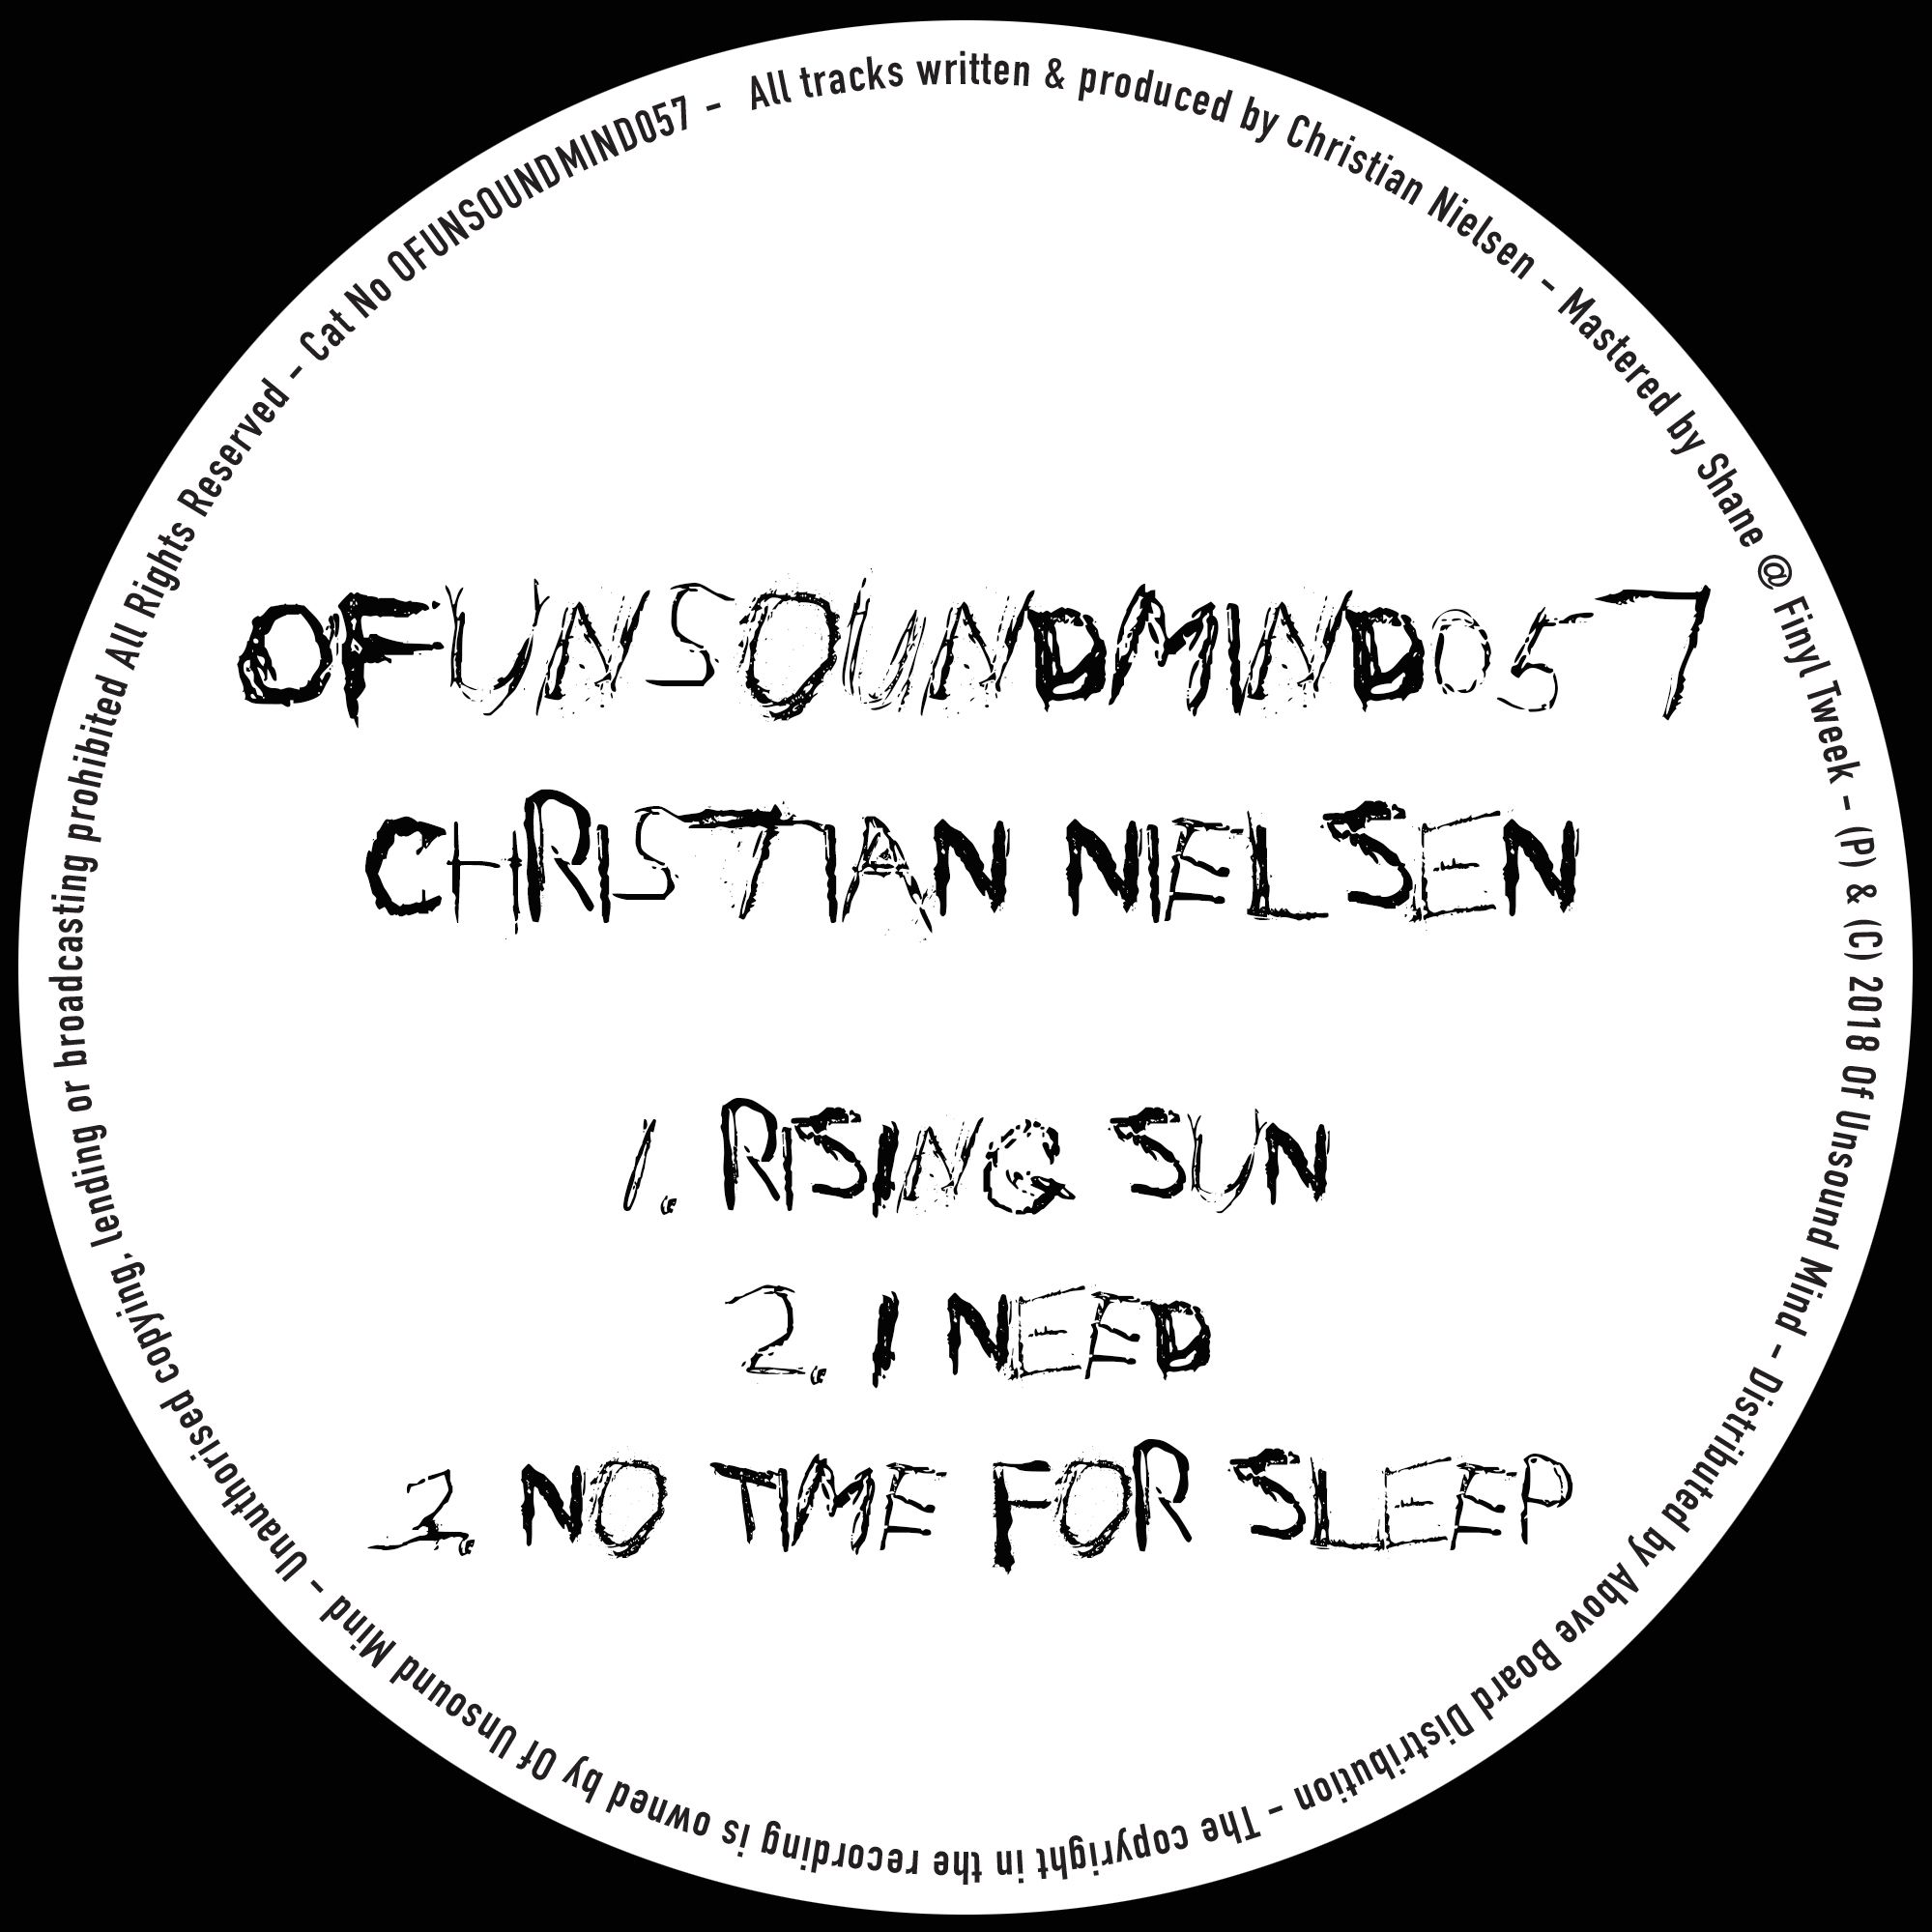 Tikiake Christian Nielsen - No Time For Sleep